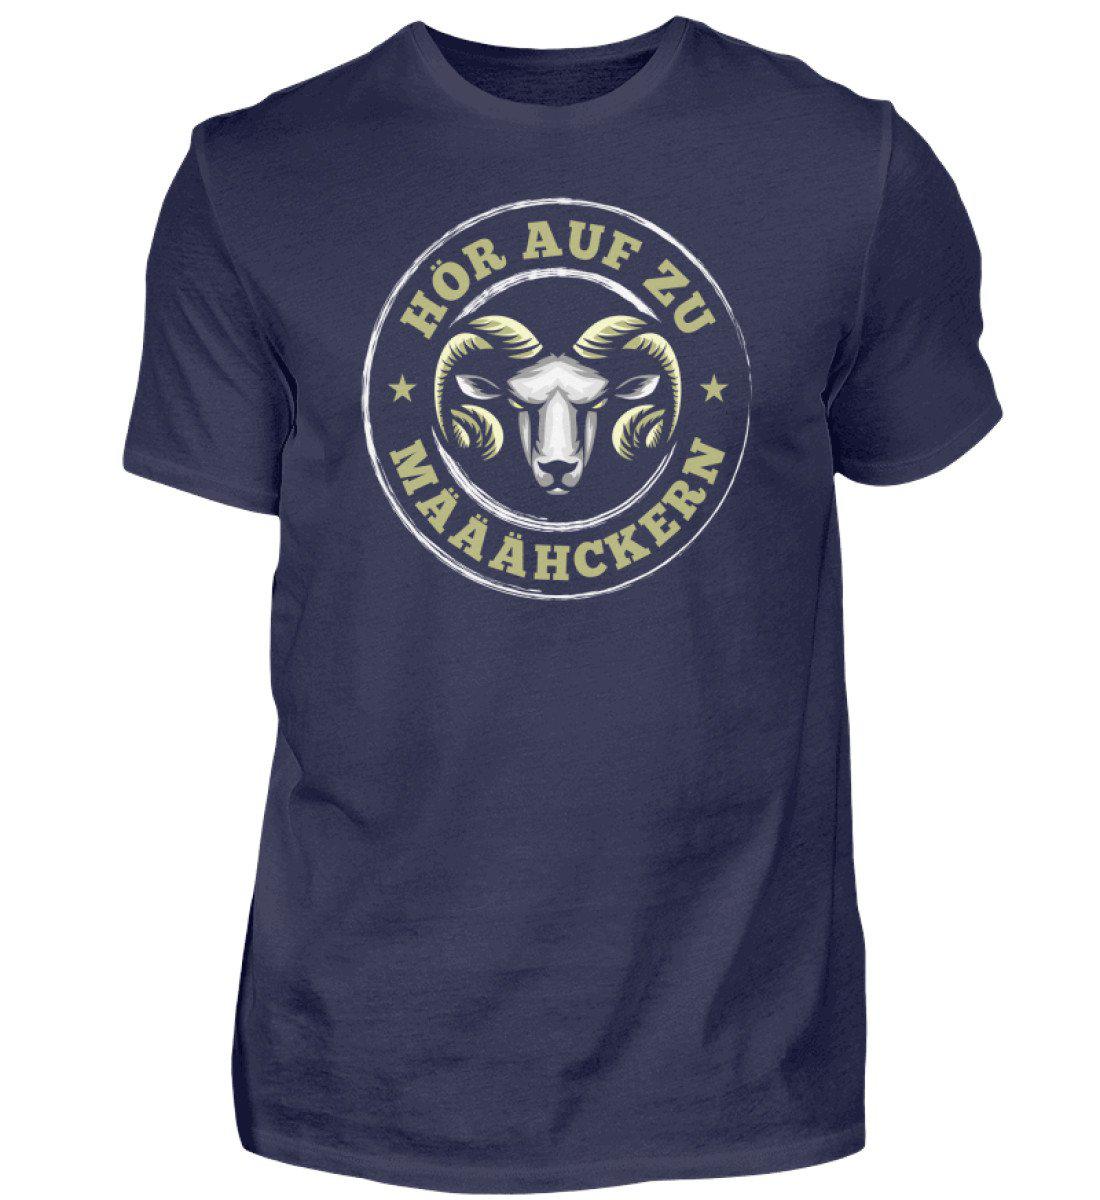 Hör auf zu määähckern · Herren T-Shirt-Herren Basic T-Shirt-Navy-S-Agrarstarz